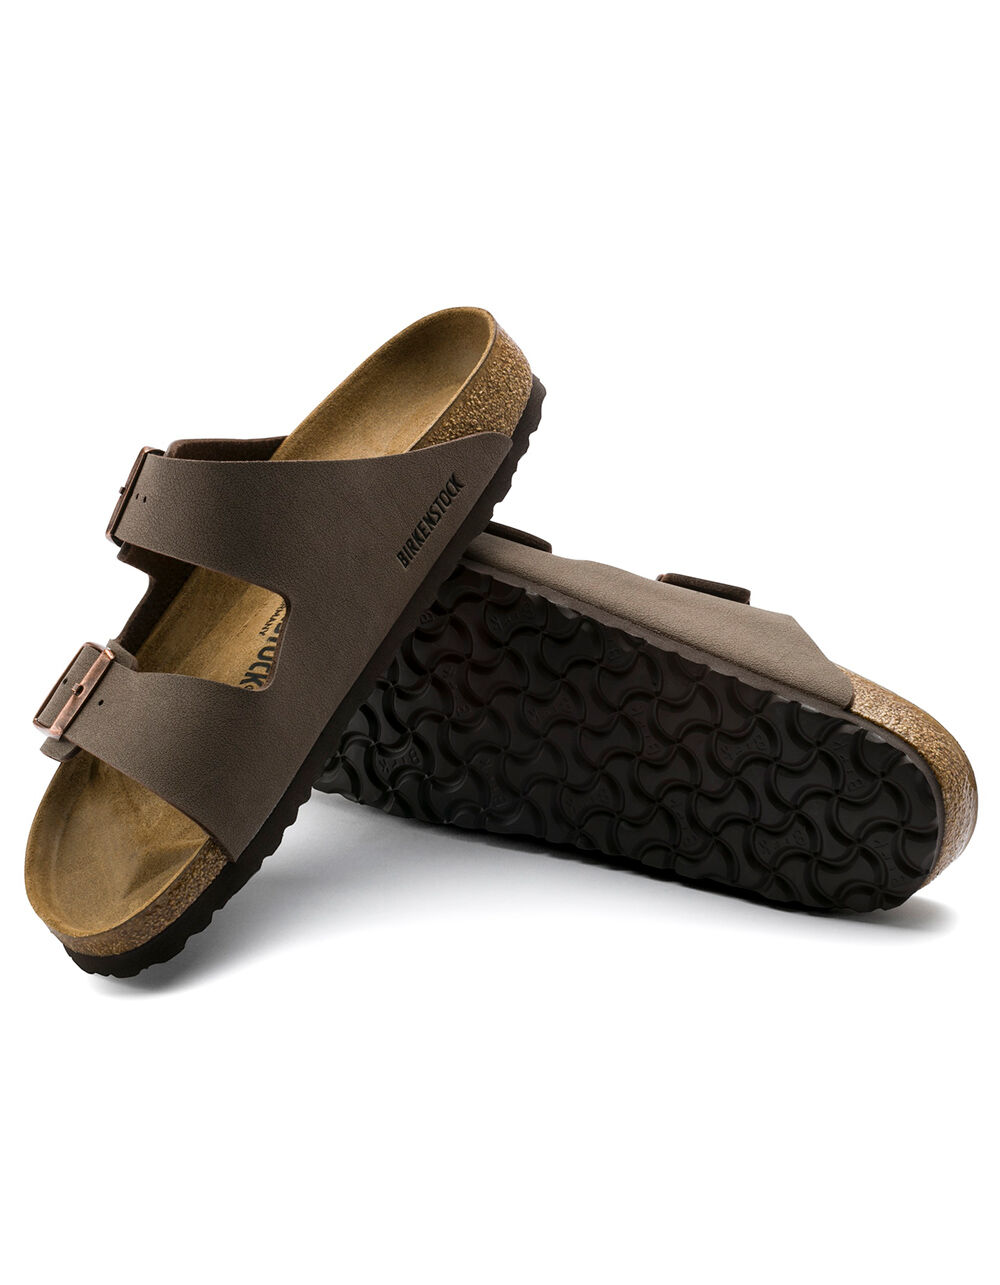 Birkenstock Arizona Suede Women's Sandals, Size 7- Mocha Suede